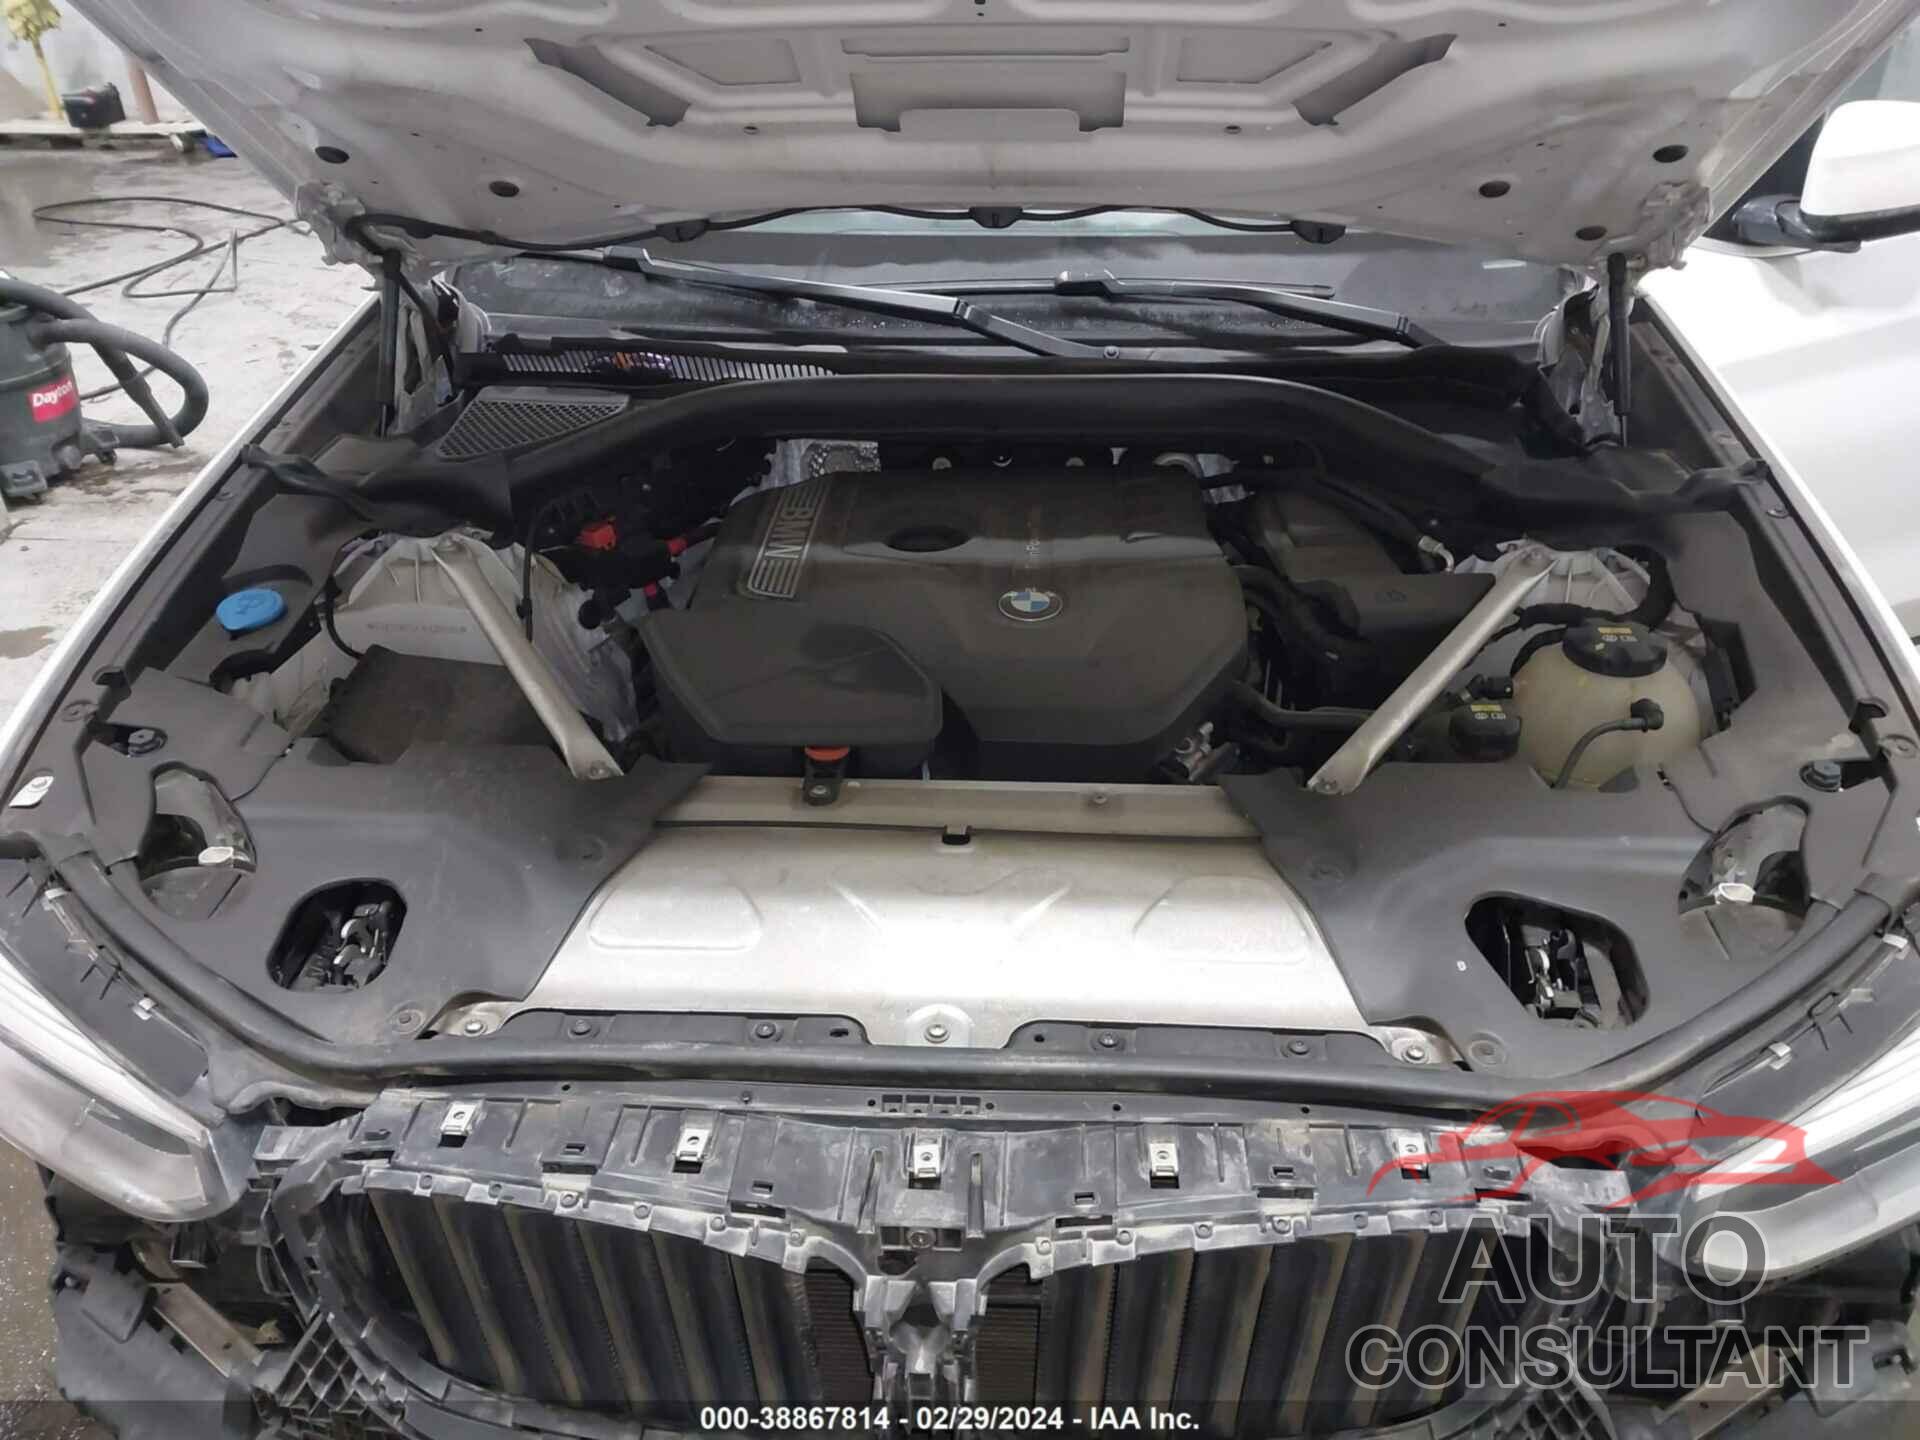 BMW X3 2018 - 5UXTR9C52JLC80598